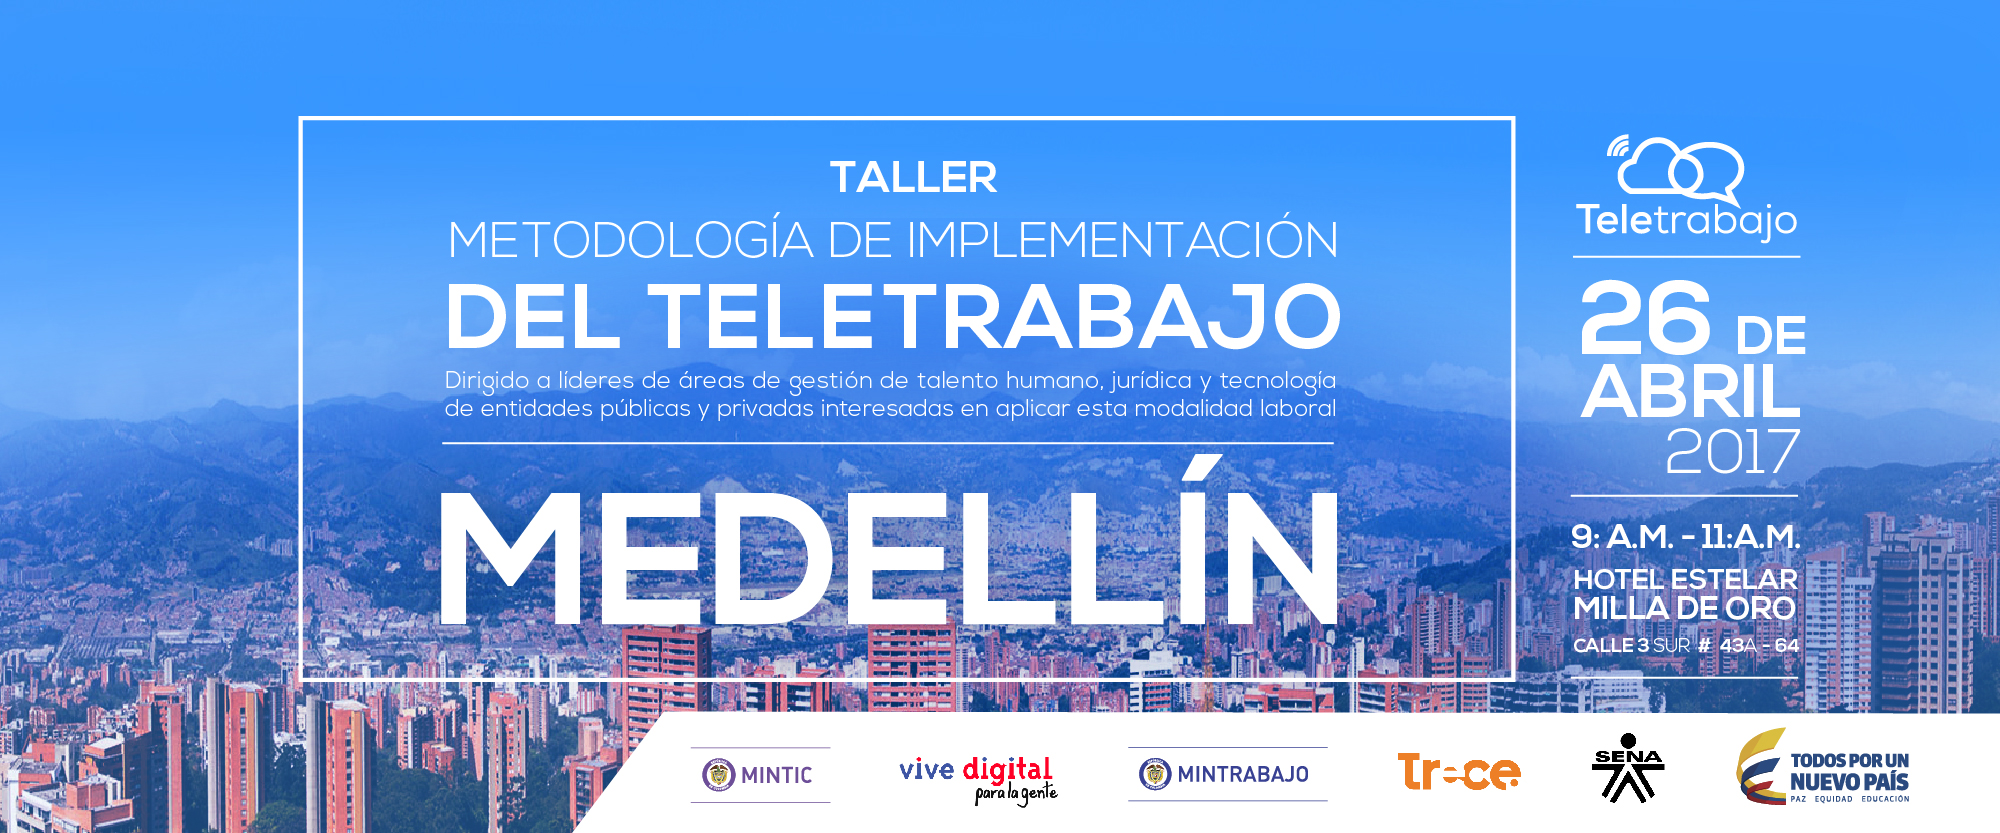 Teletrabajo: alternativa para disminuir la contaminación en Medellín